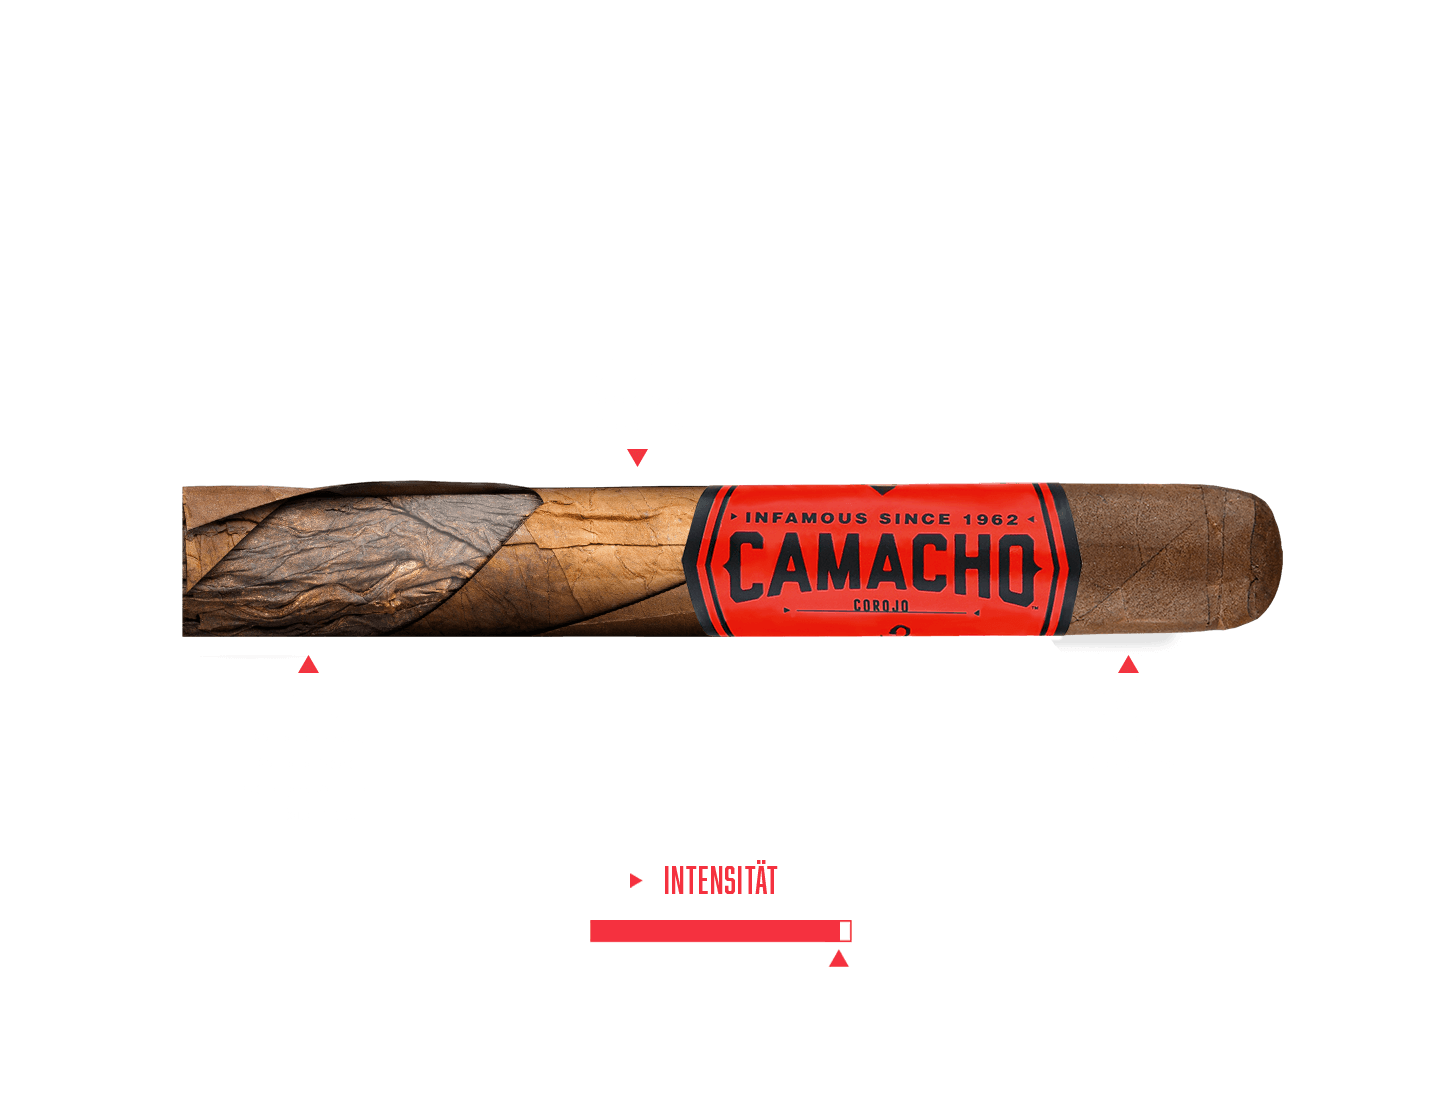 Geschmacks- und Tabakmischungsbeschreibung der Camacho Corojo Zigarre